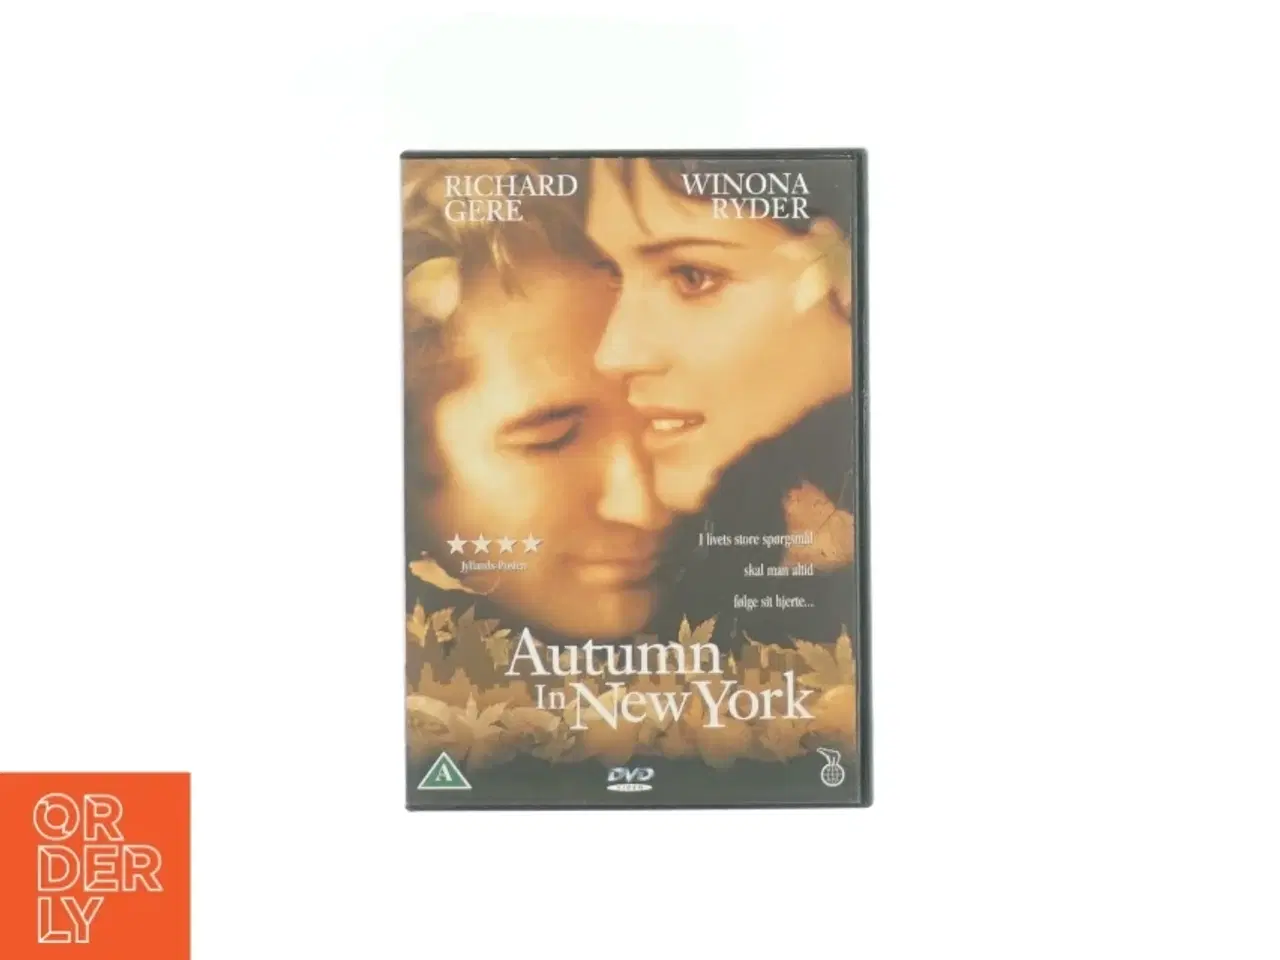 Billede 1 - Autumn in New York med Richard Gere og Winona Ryder